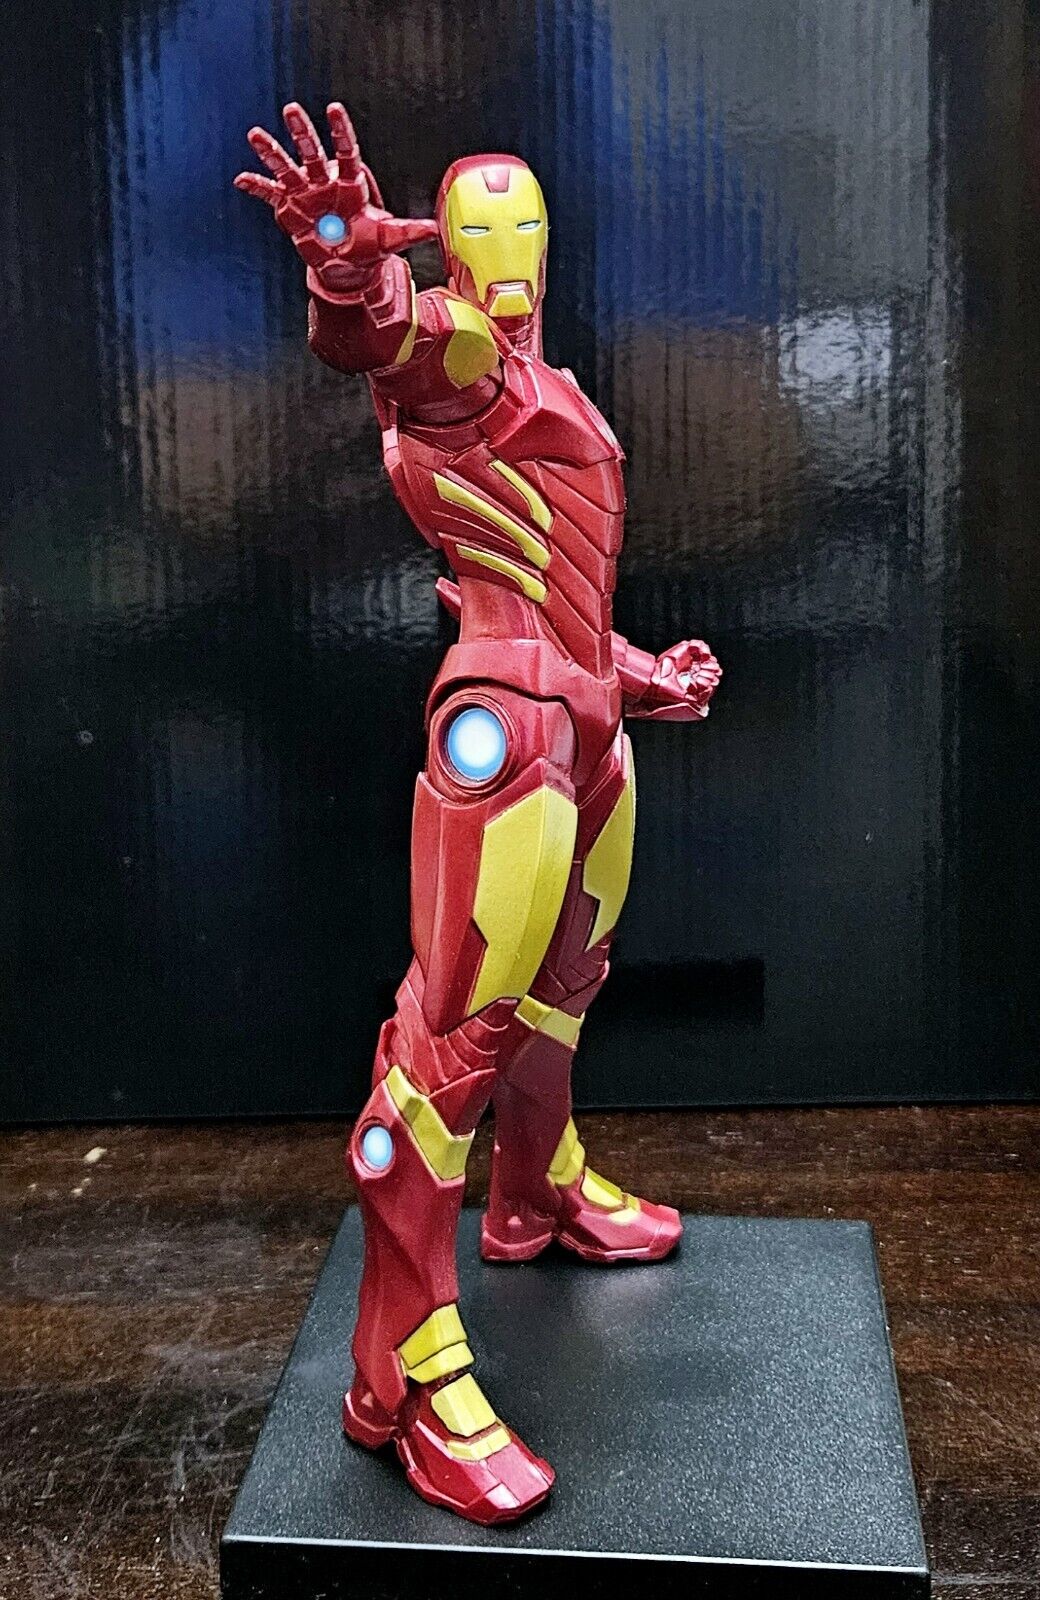 Kotobukiya ARTFX+ Avengers MARVEL NOW 1/10 Scale Statue Iron Man RED VARIANT 